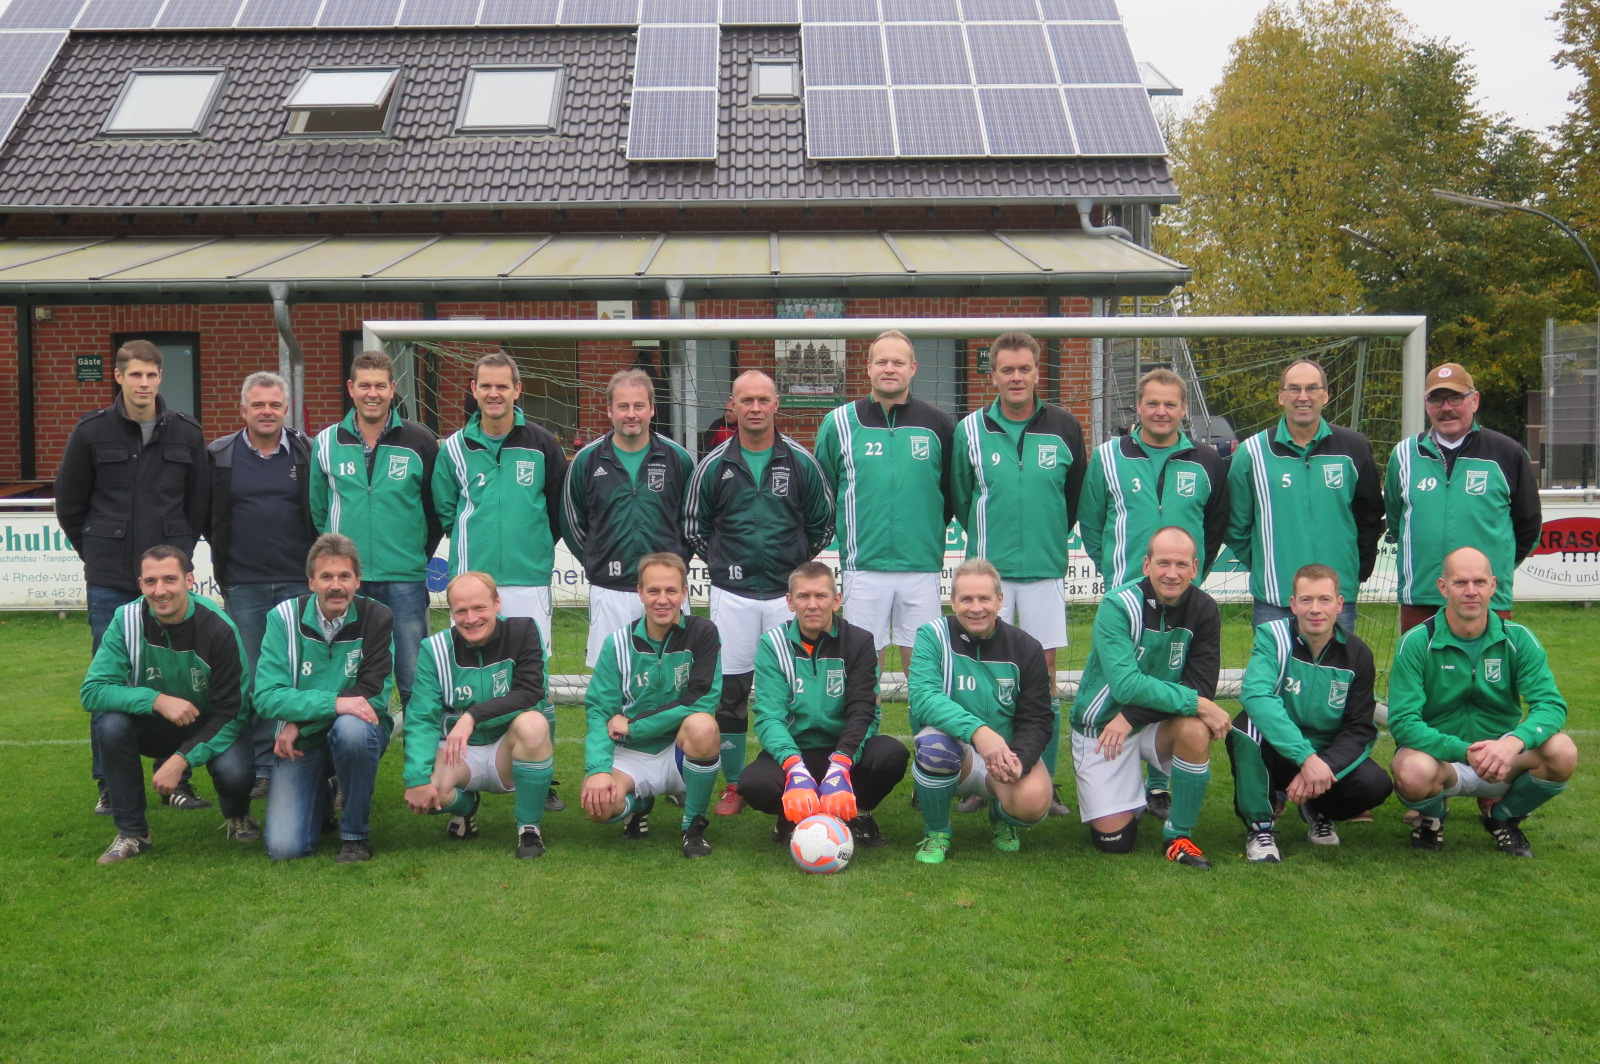 Die Mannschaft des SC Grün-Weiß Vardingholt wurde am Samstag, 24. Oktober 2015, Vizekeismeister bei der Altliga-Meisterschaftsrunde 2015.